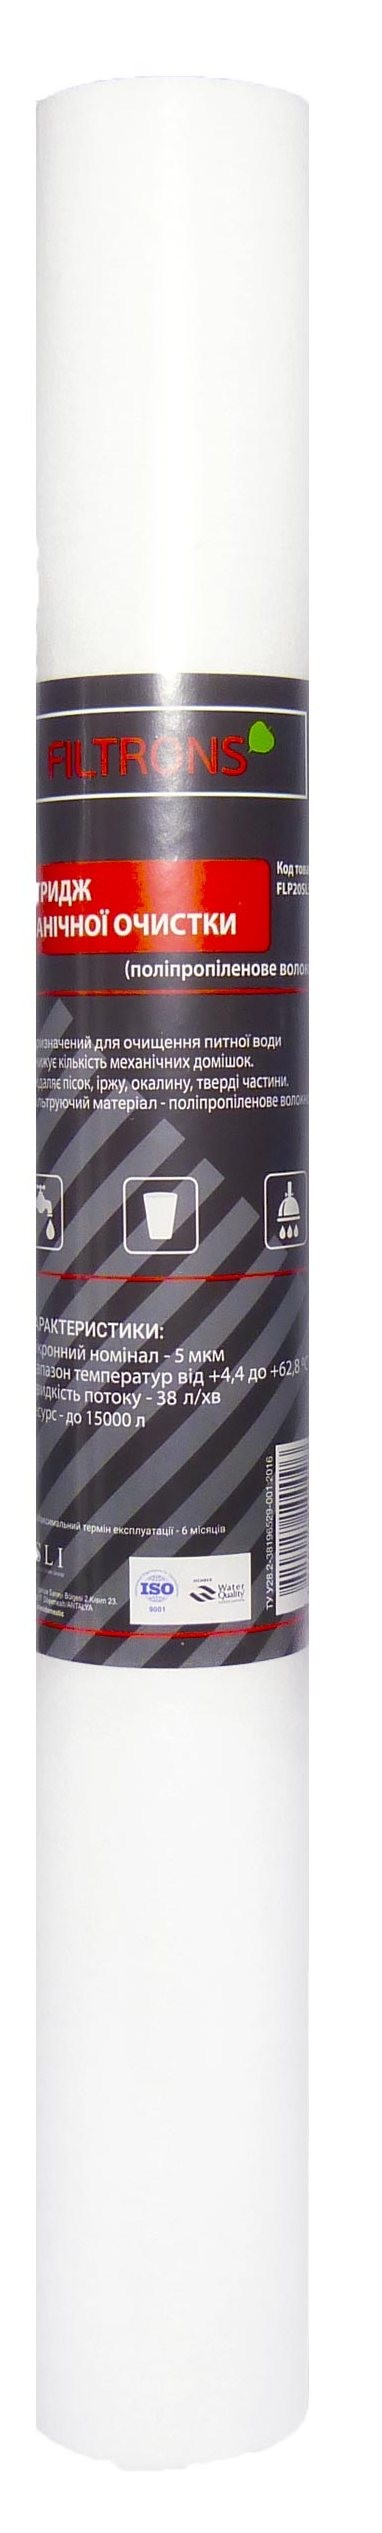 Картридж для фильтра Filtrons 20' SLIM 20 мкм (FLVR20SL20) в Николаеве